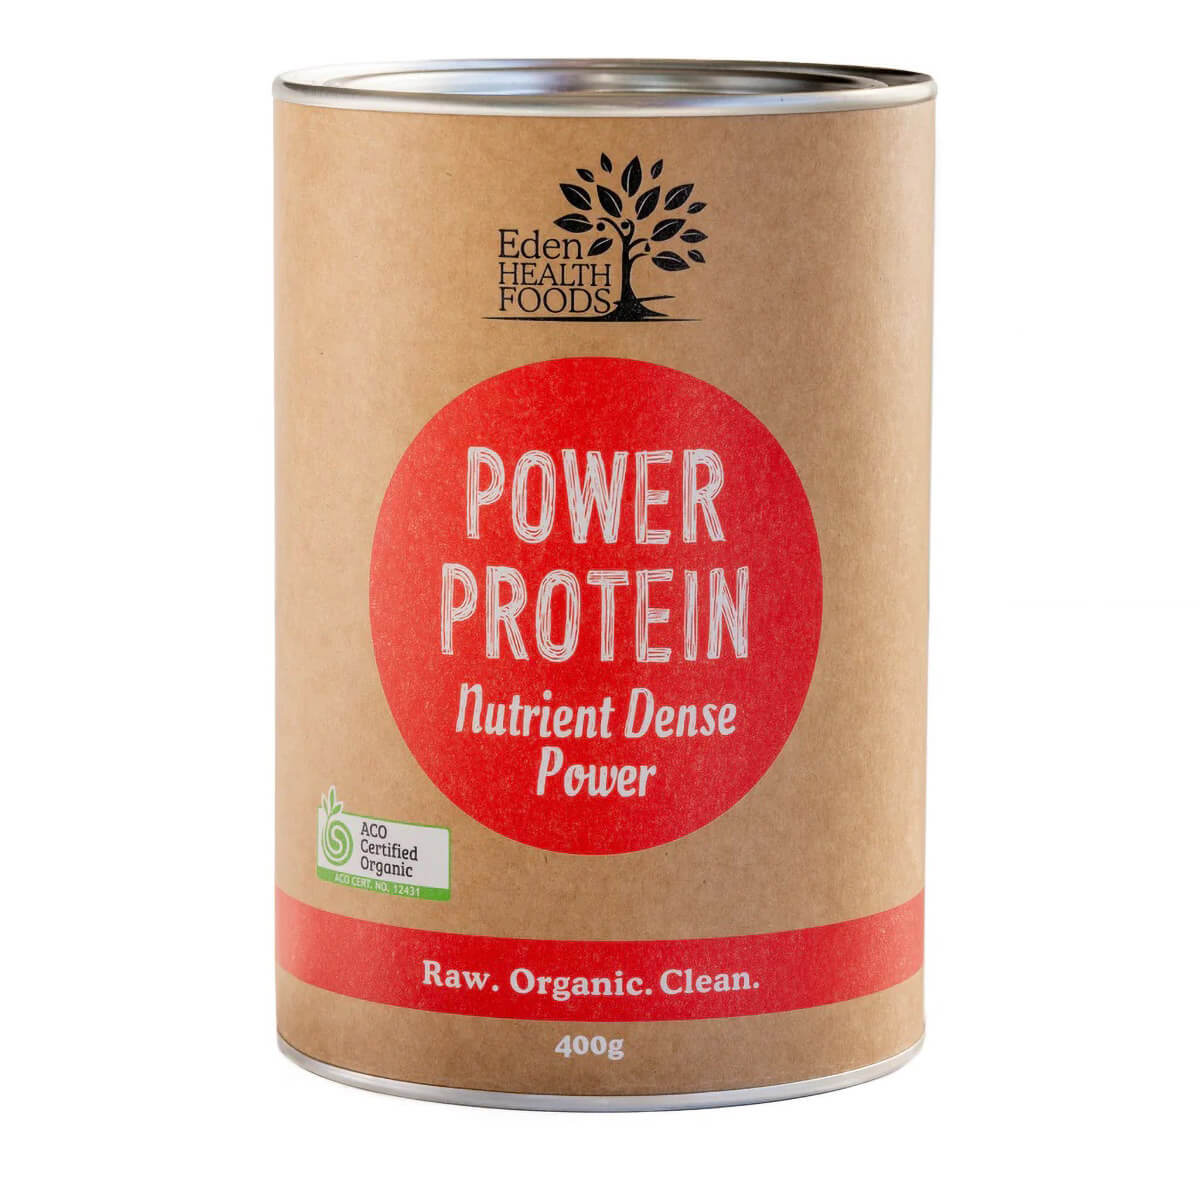 Power Protein - Nutrient Dense Power - 400g - Eden Healthfoods